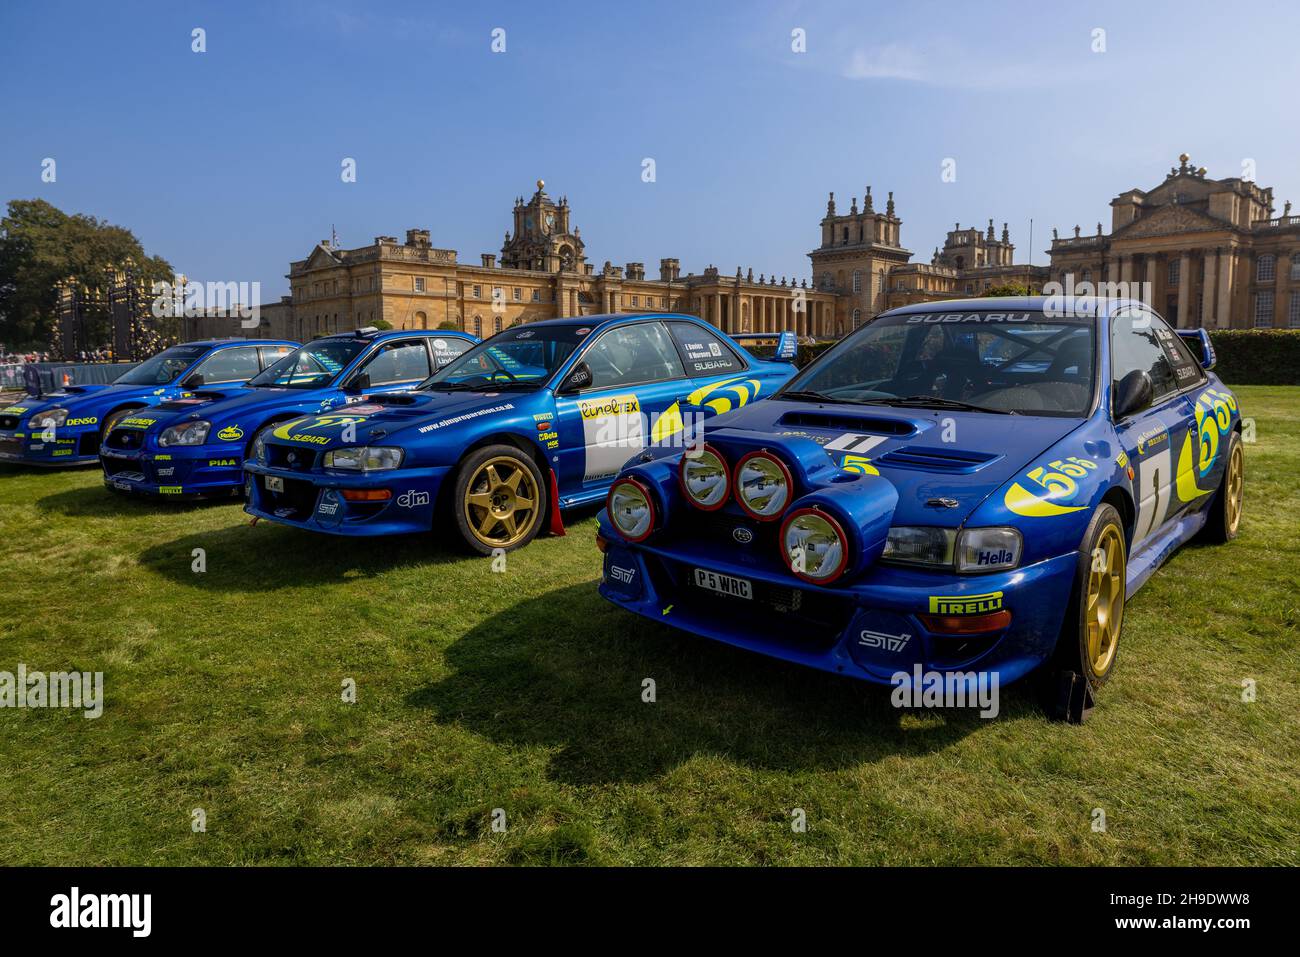 Impressionante line-up di Subaru rally auto in mostra al Concours d’Elegance tenutosi a Blenheim Palace il 5th settembre 2021 Foto Stock